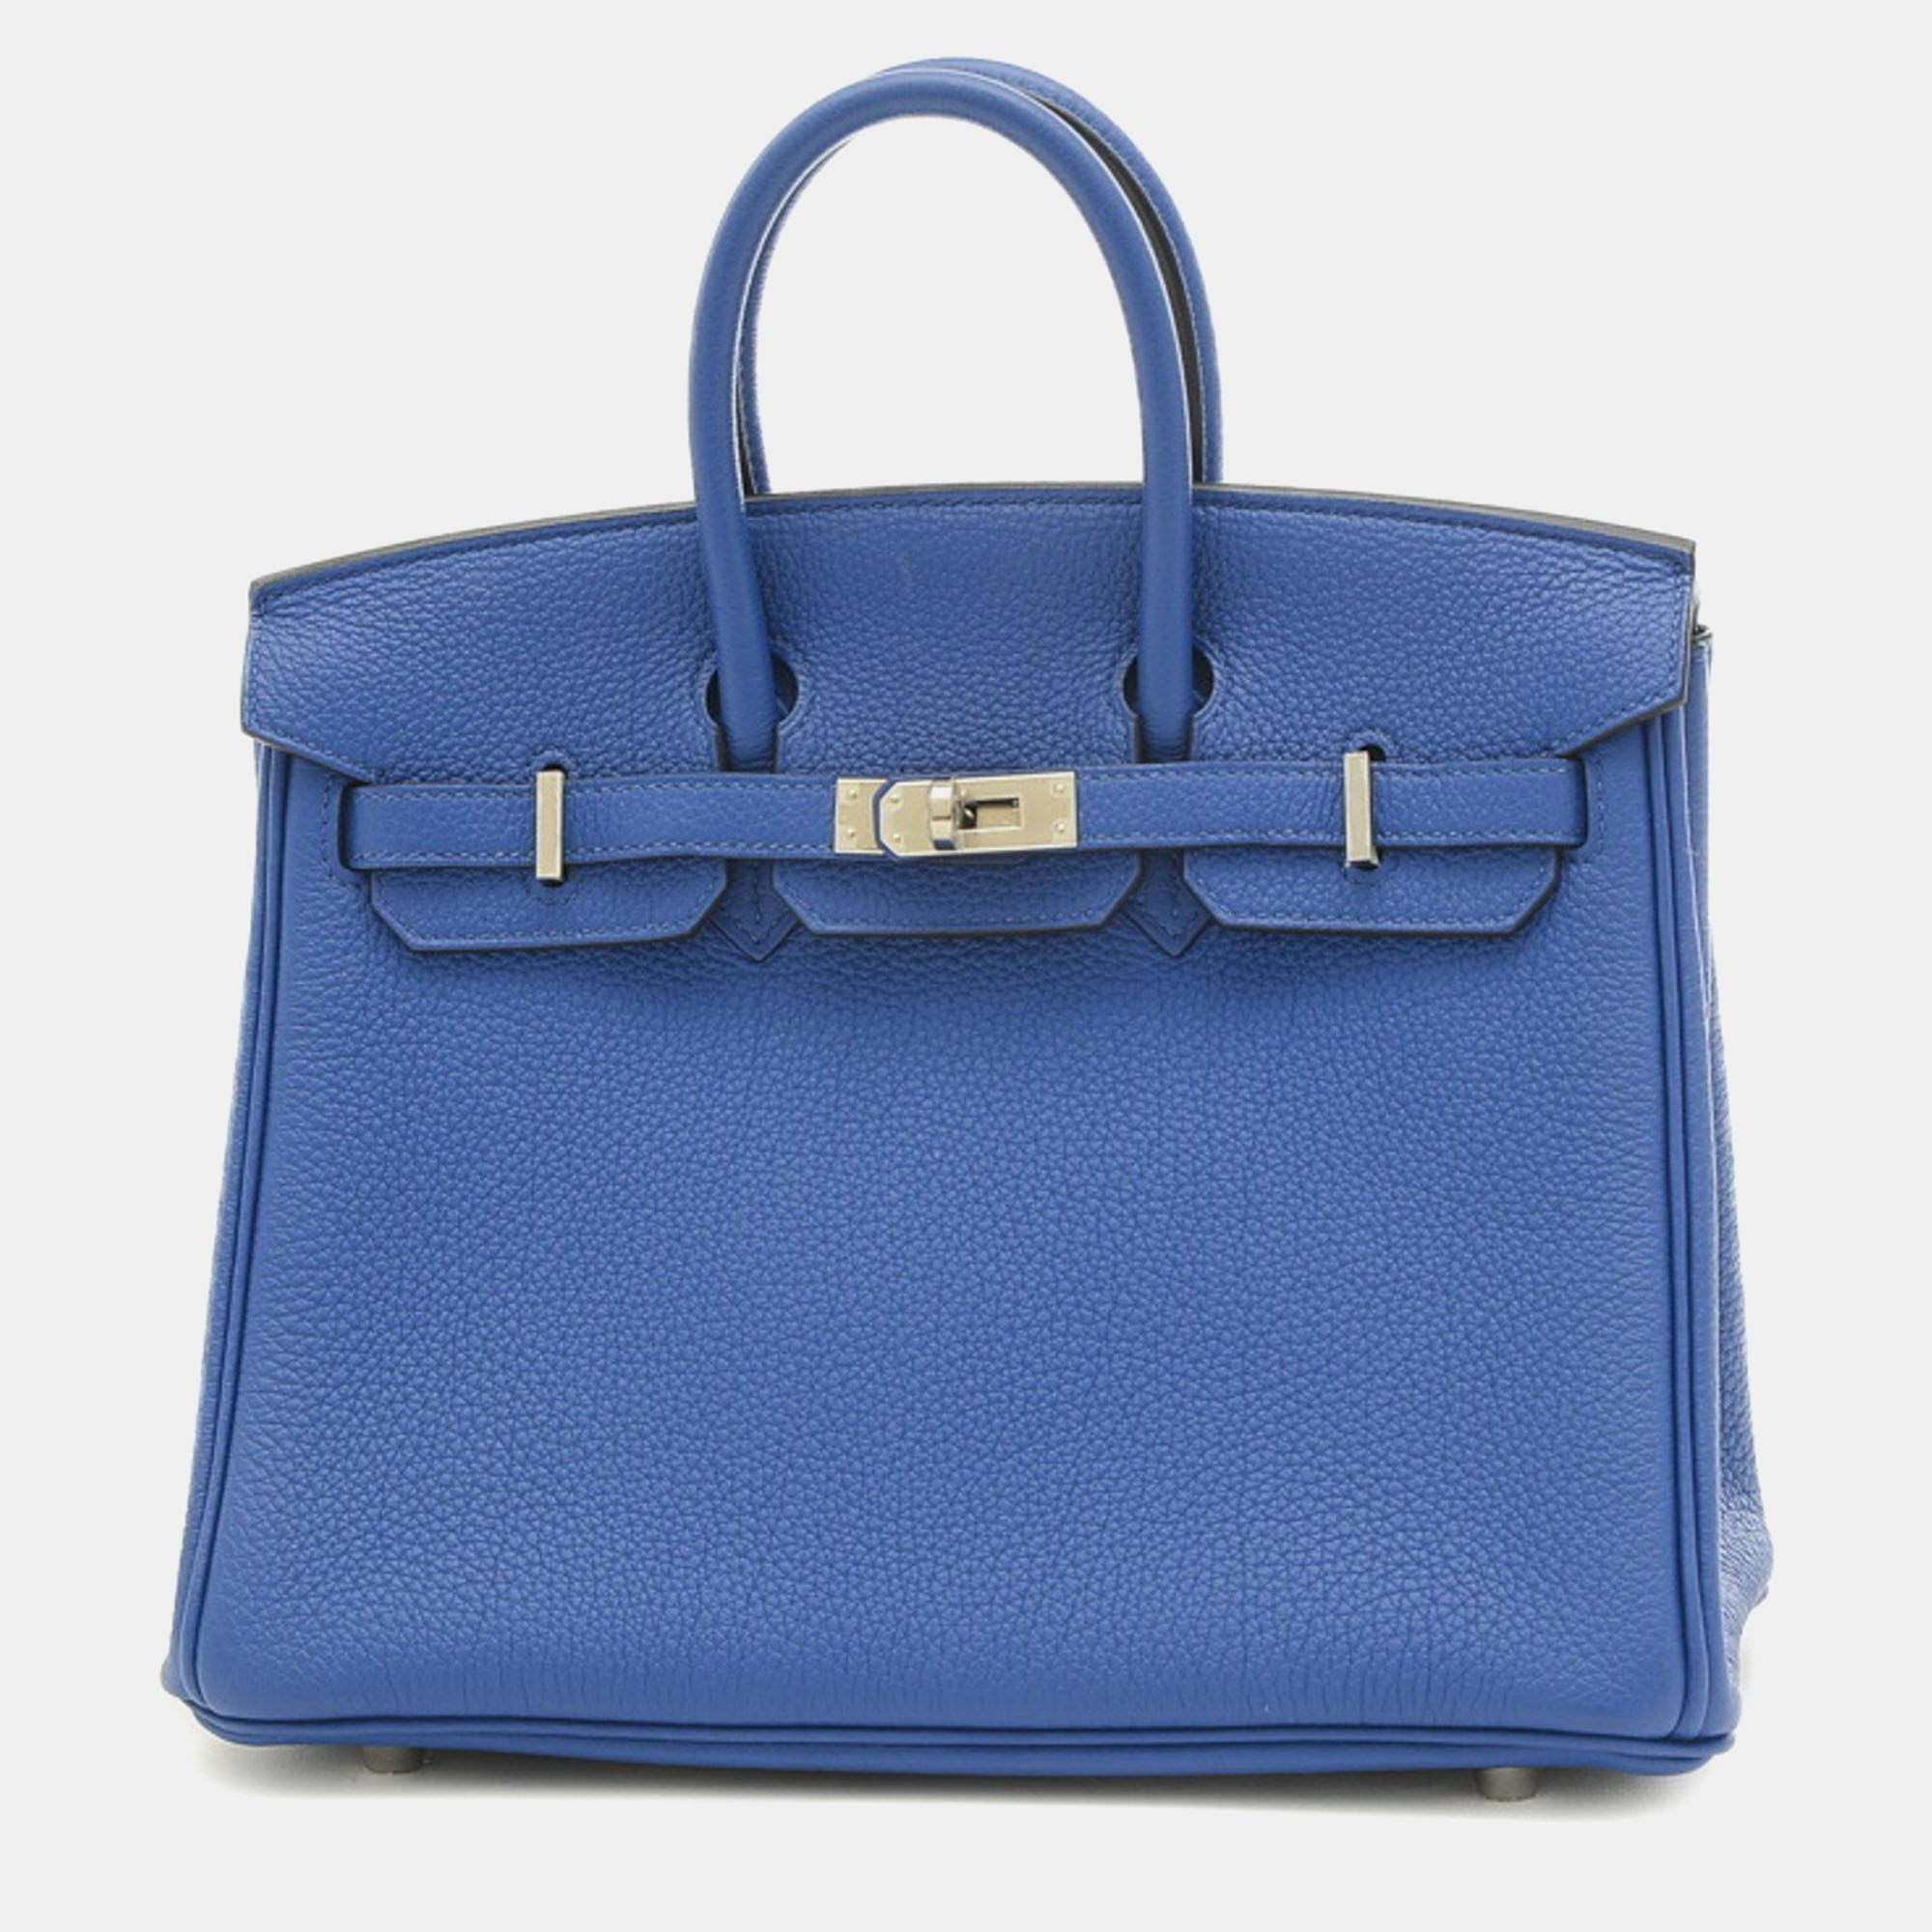 Hermes blue togo leather birkin 25 tote bag